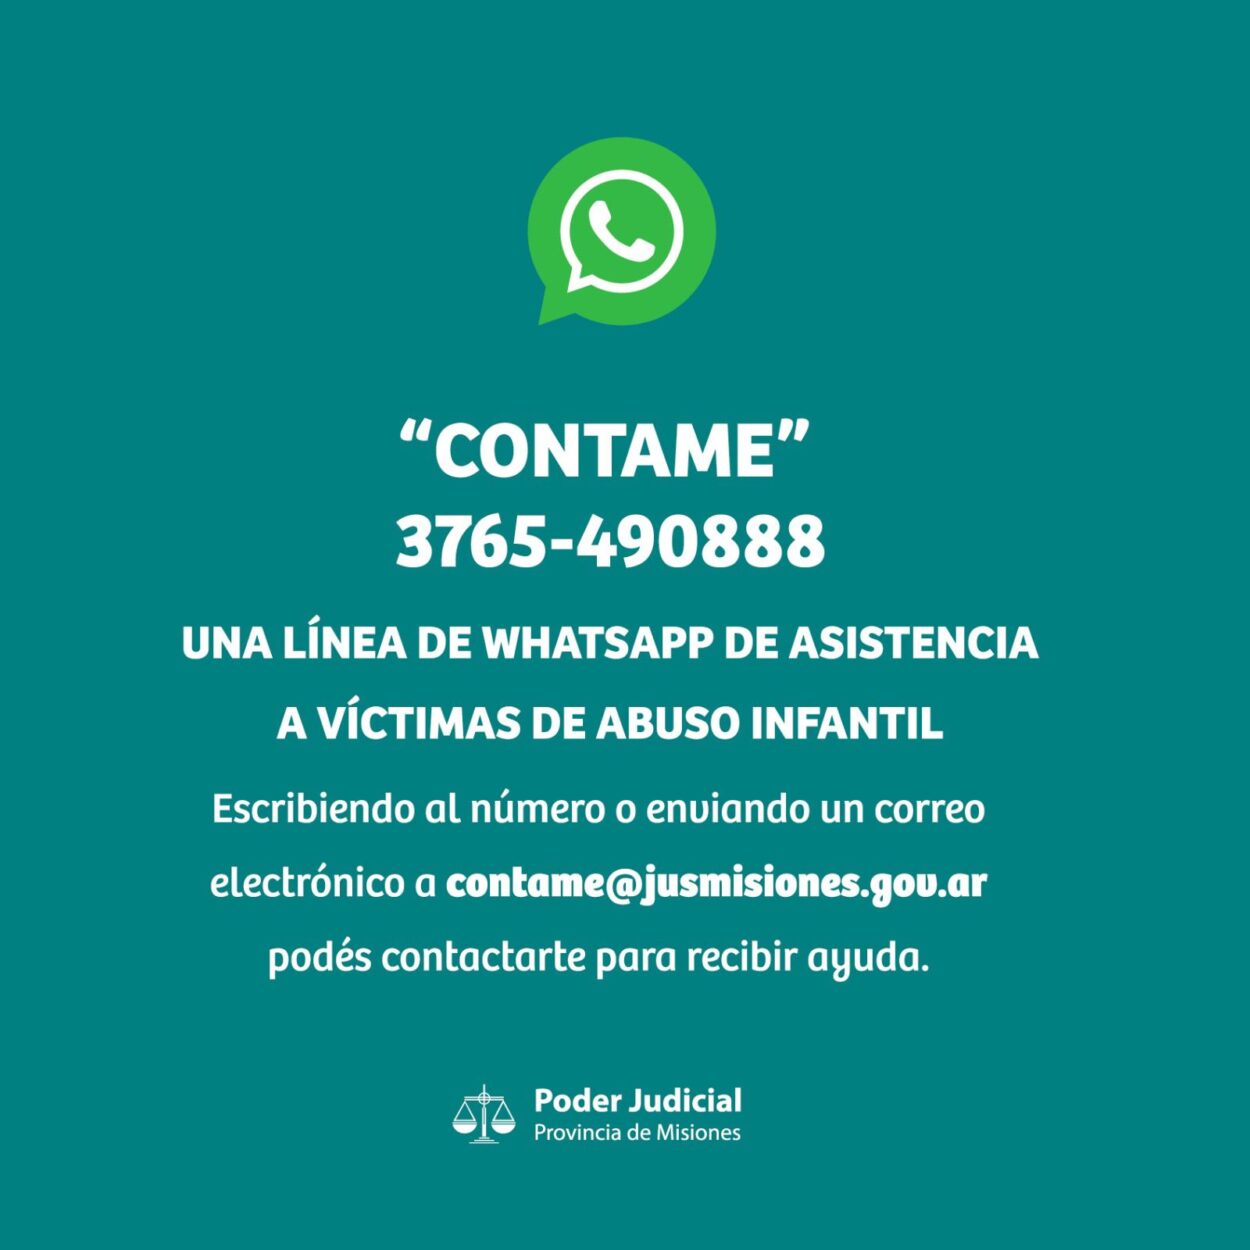 “Contame”: una línea de WhatsApp de asistencia a víctimas de abuso infantil imagen-17